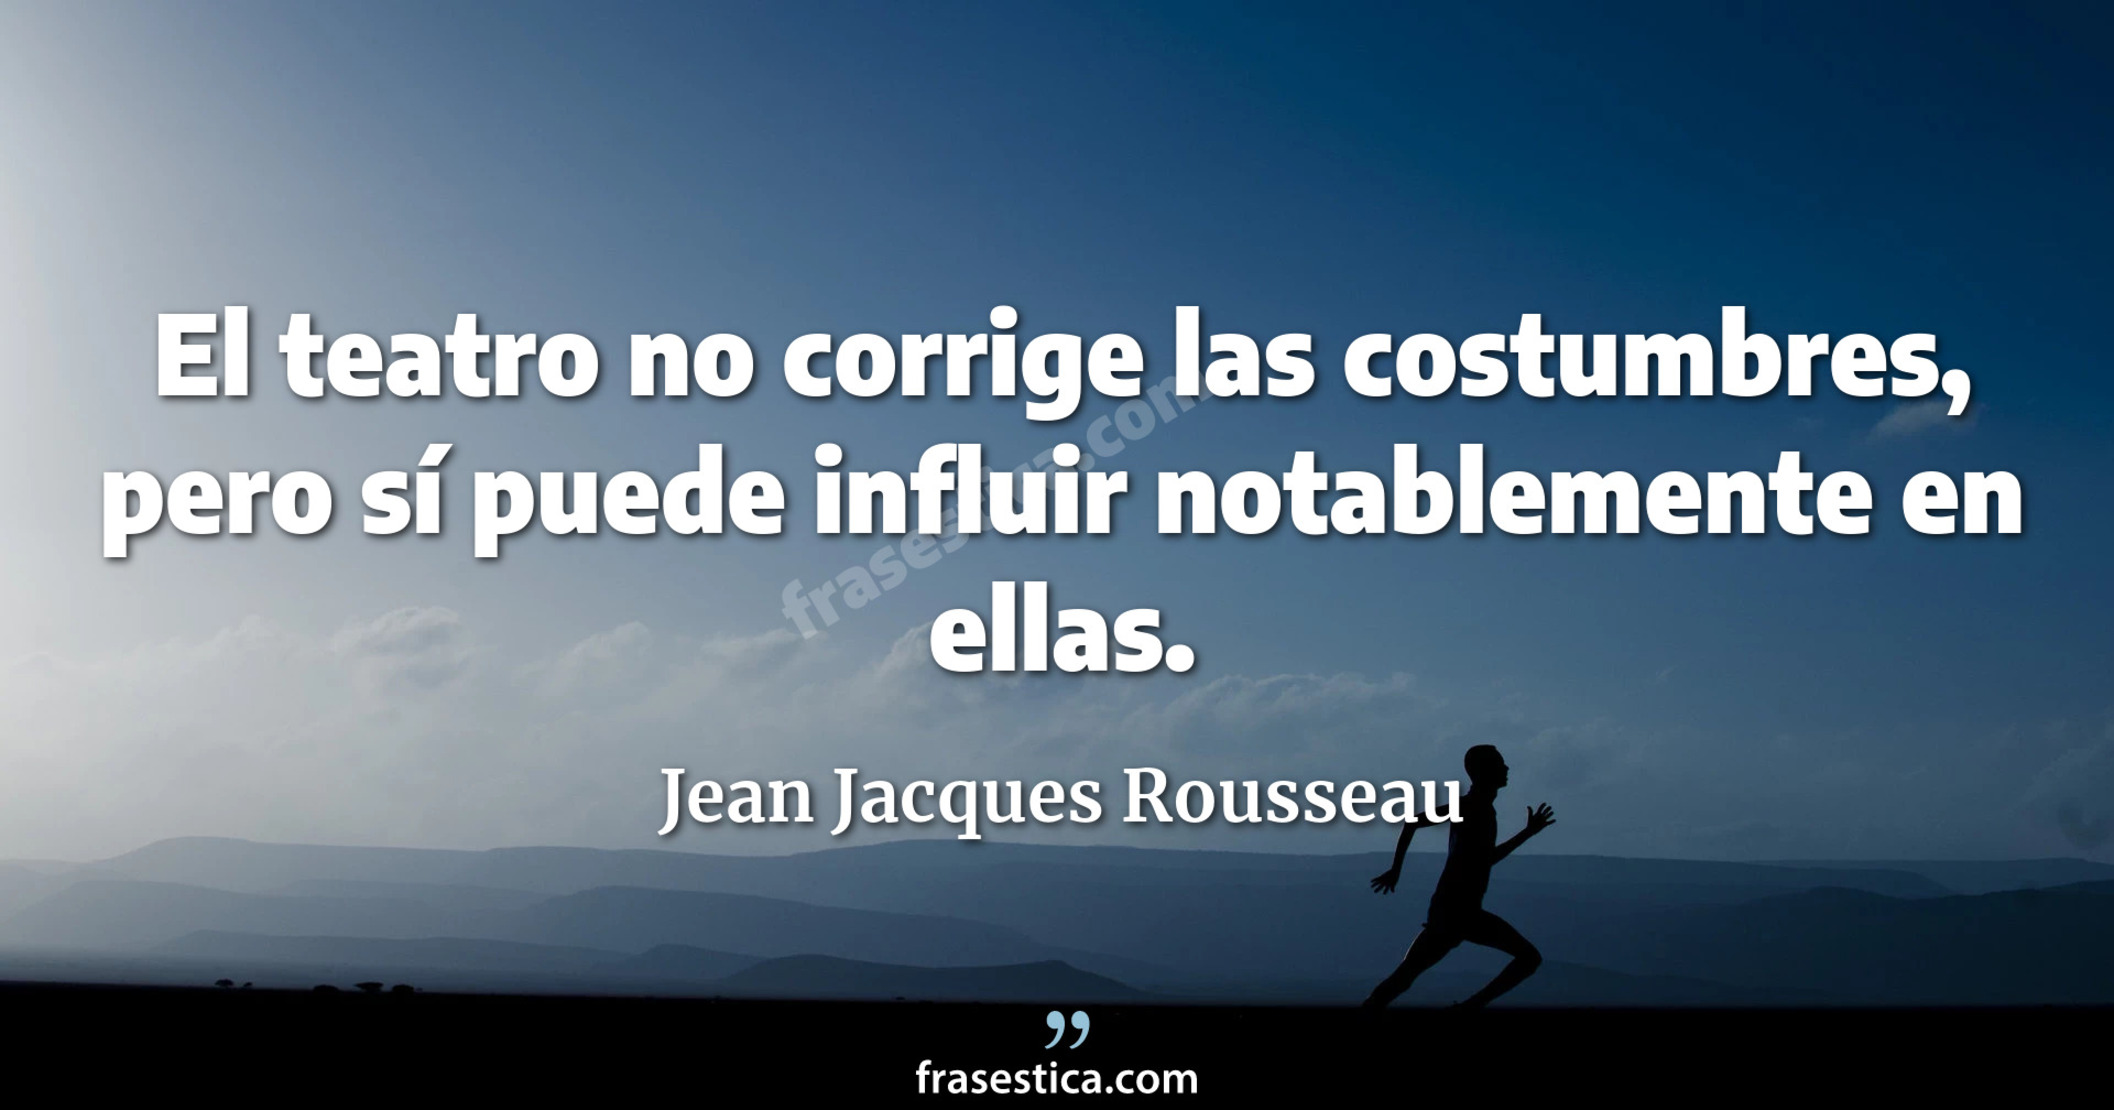 El teatro no corrige las costumbres, pero sí puede influir notablemente en ellas. - Jean Jacques Rousseau